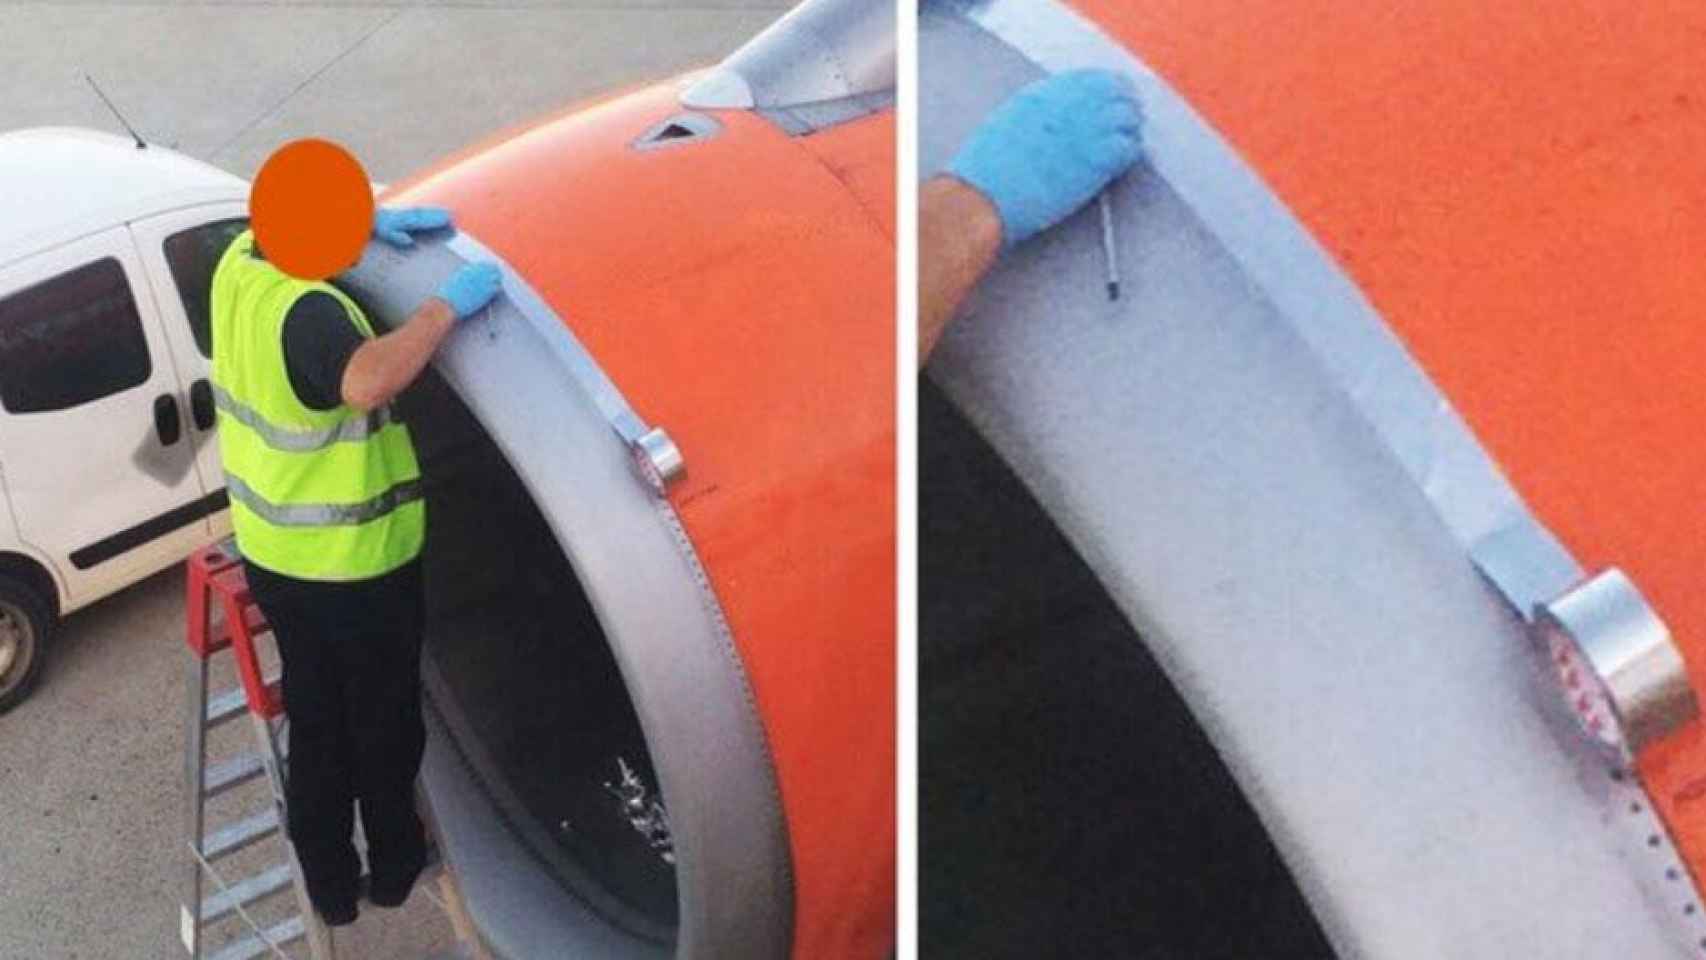 Un operario repara un avión con cinta adhesiva / @J_Morillas